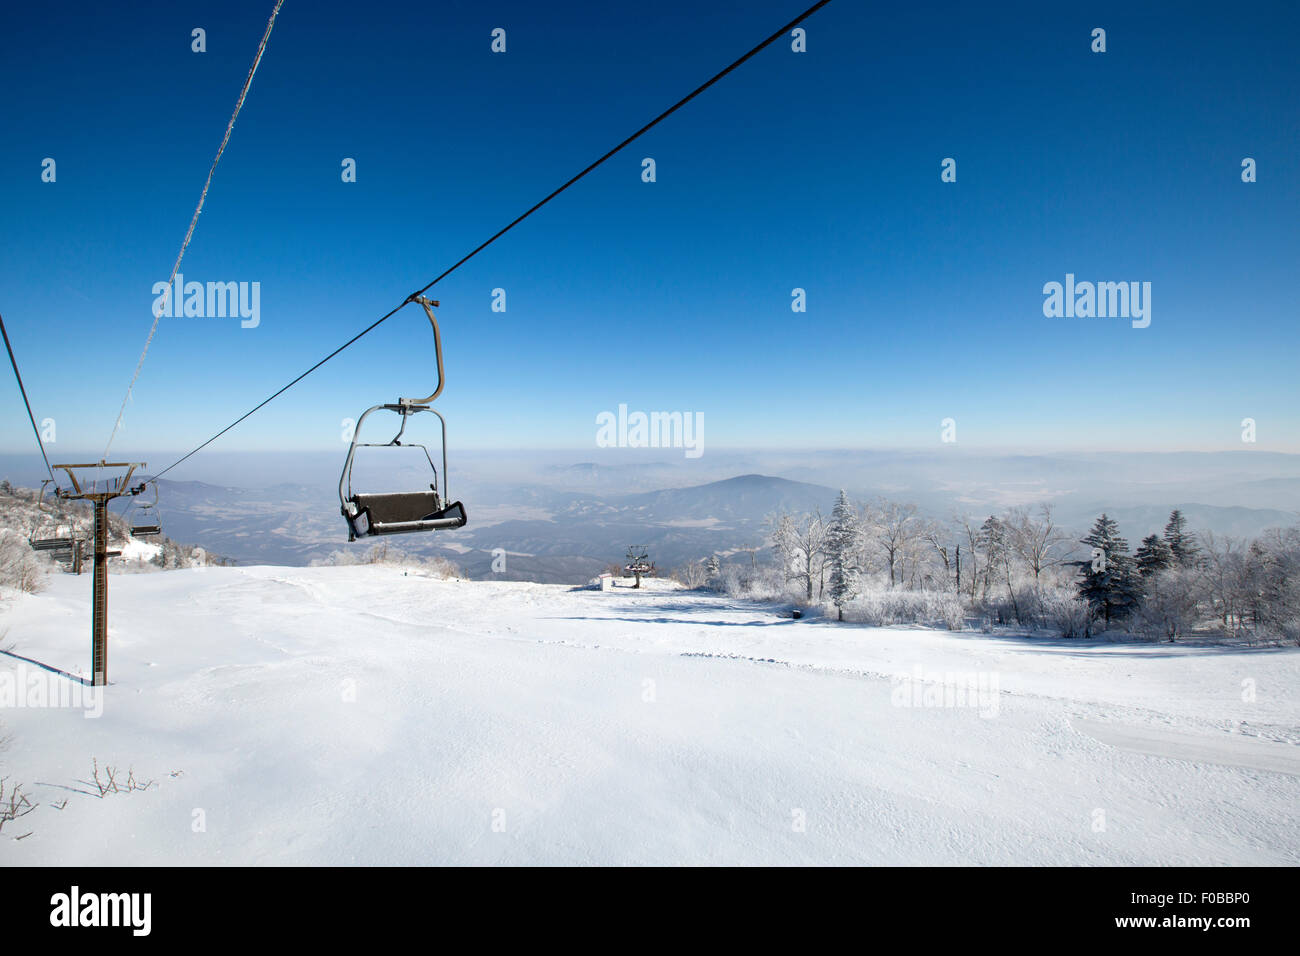 Ski resort, China Stock Photo